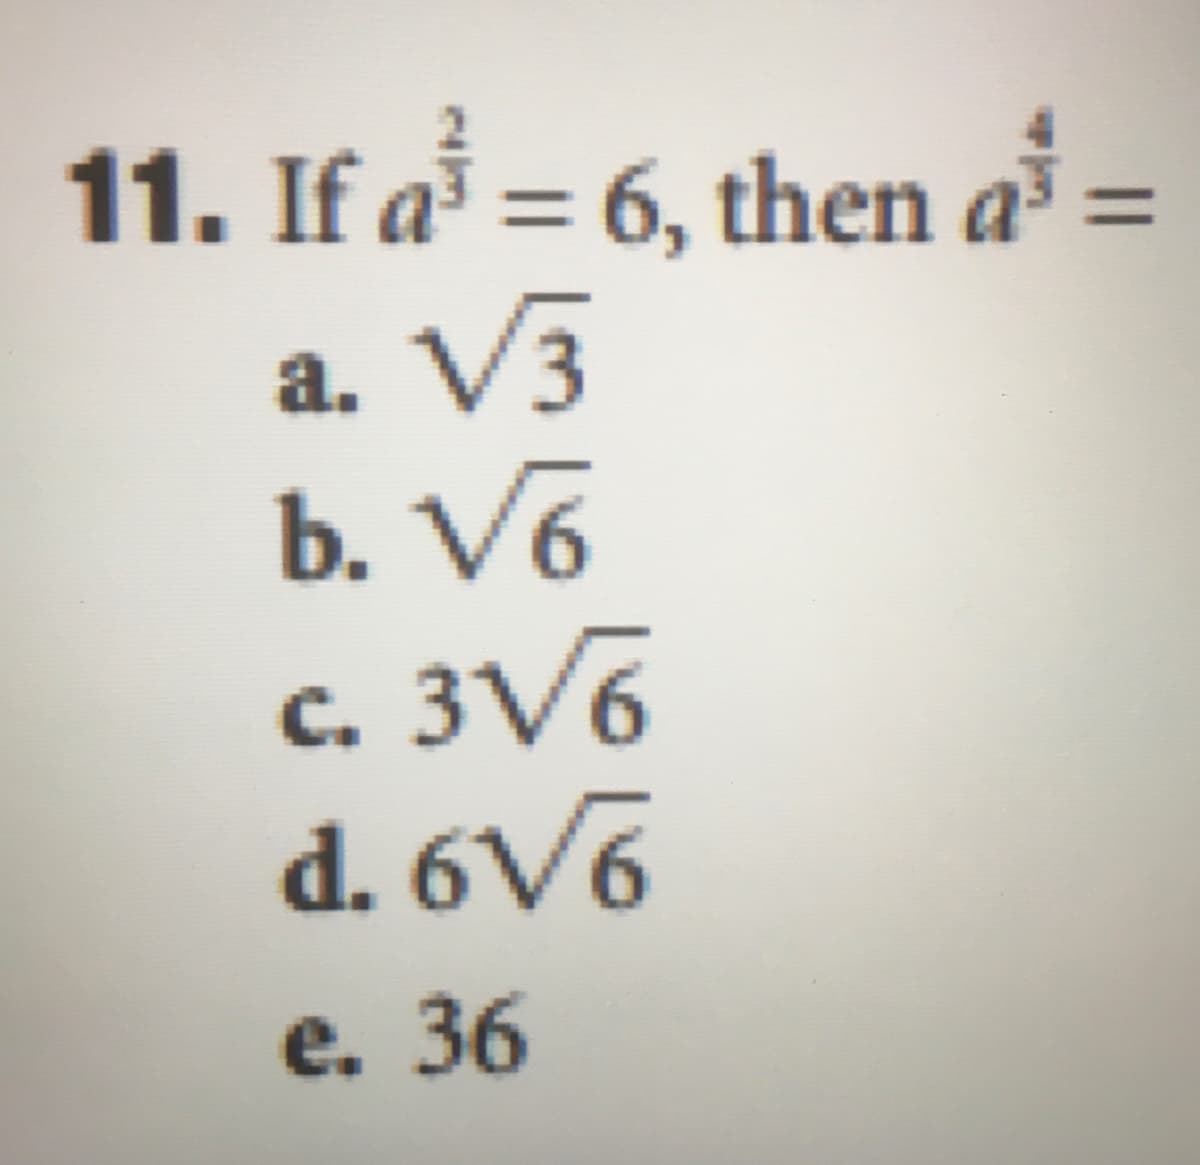 11. If a = 6, then a :
V3
a.
b. V6
3V6
d. 6V6
C.
е. 36
||
